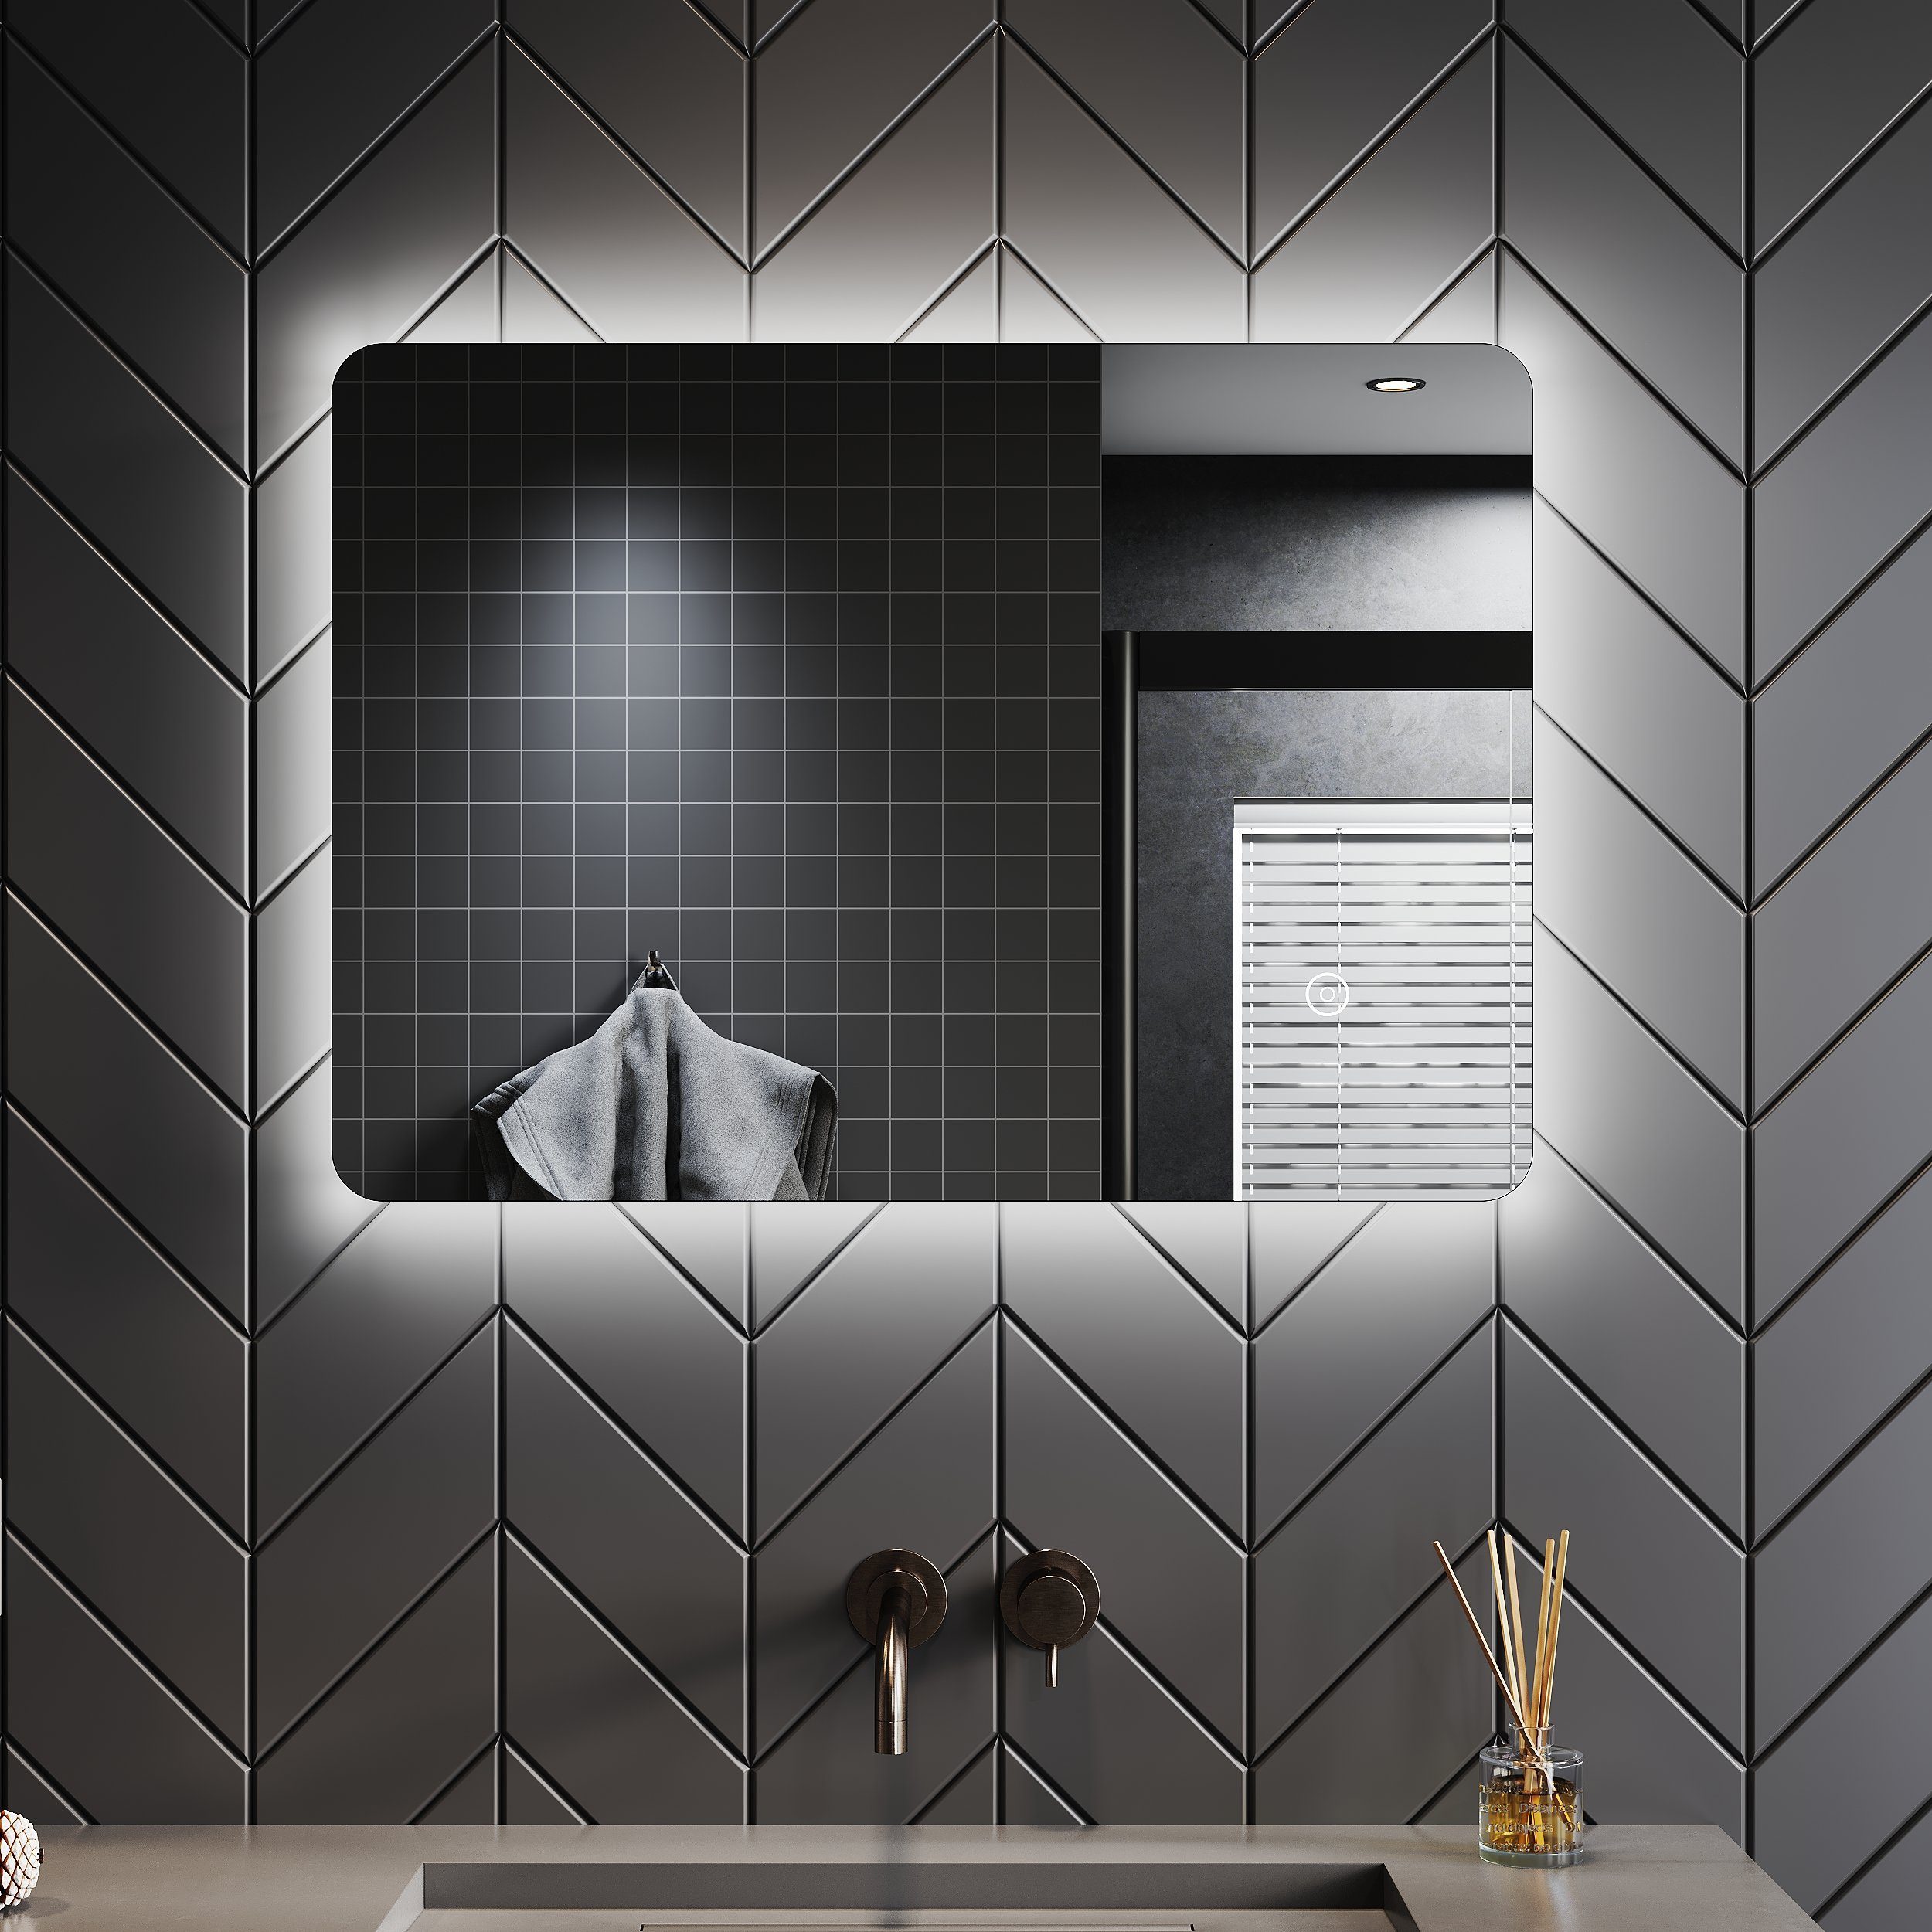 SONNI Badspiegel mit Beleuchtung Led Spiegel 70 x 50 cm mit Touch-Schalter Lichtspiegel, LED Spiegel Kosmetikspiegel Badezimmer Kaltweiß IP44 energiesparend